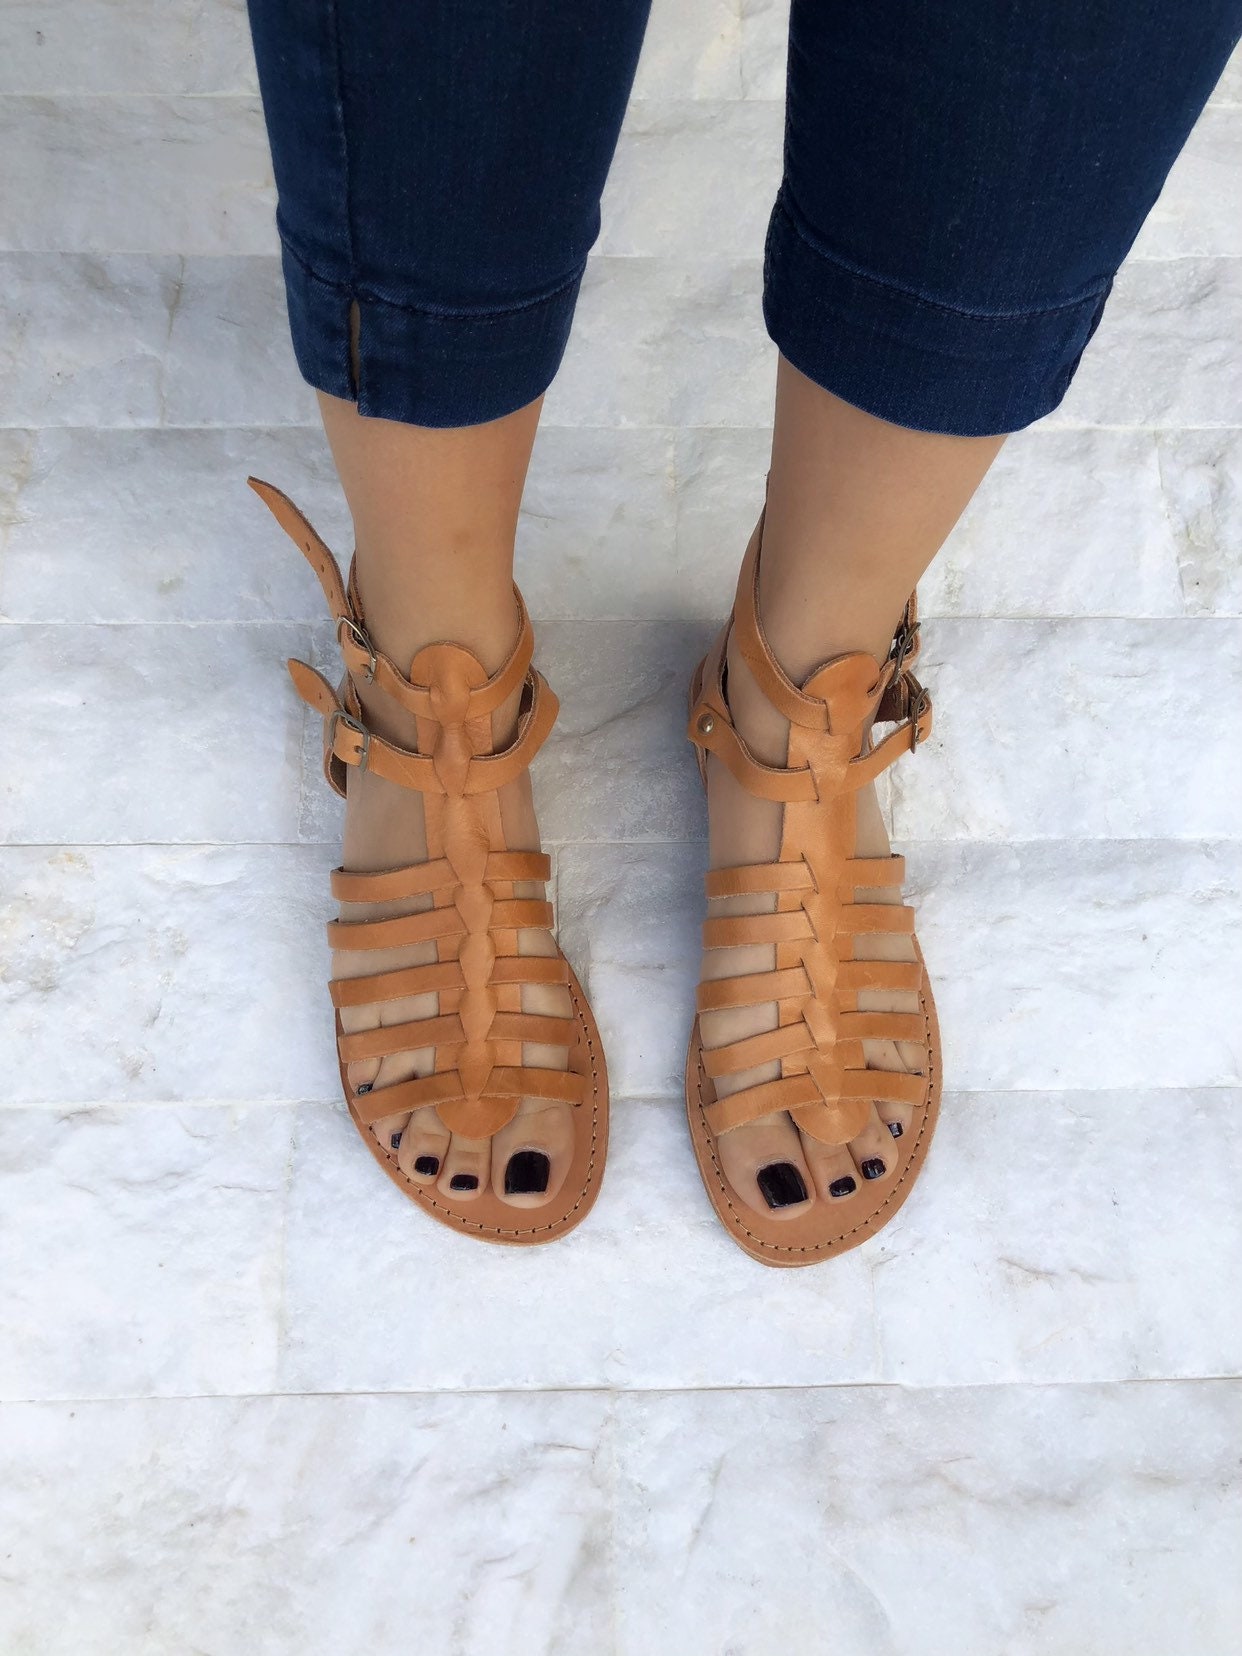 Greek Leather Sandals Gladiator Sandals Brown Sandals - Etsy UK